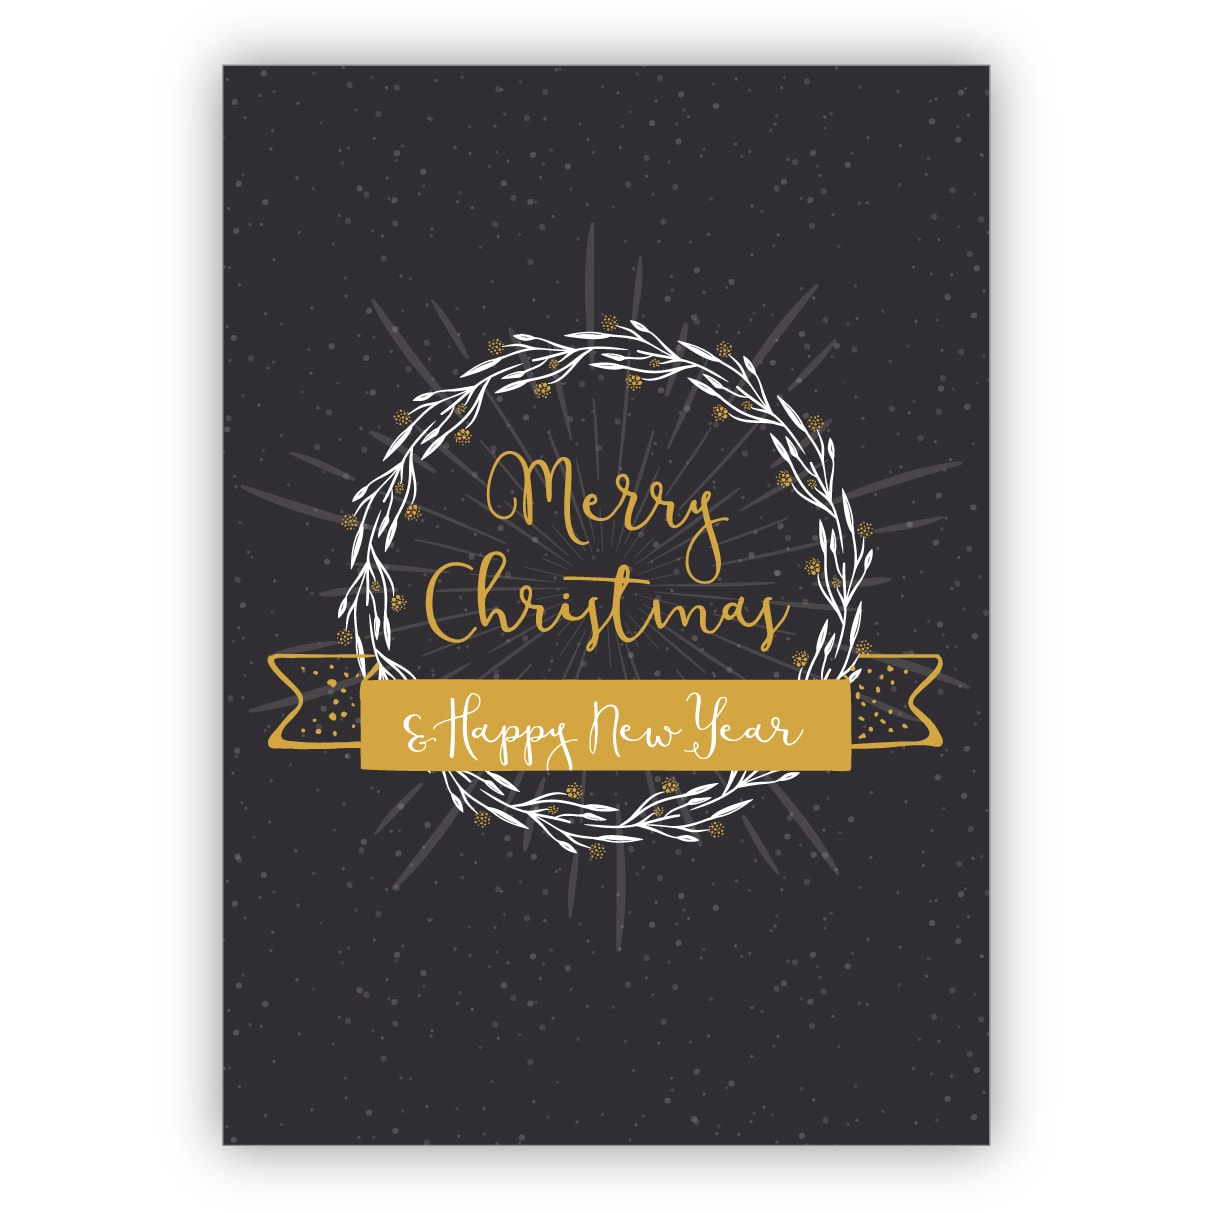 Edle englische Weihnachtskarte mit Kranz und Ornamenten auch zu Silvester: Merry Christmas & Happy new year